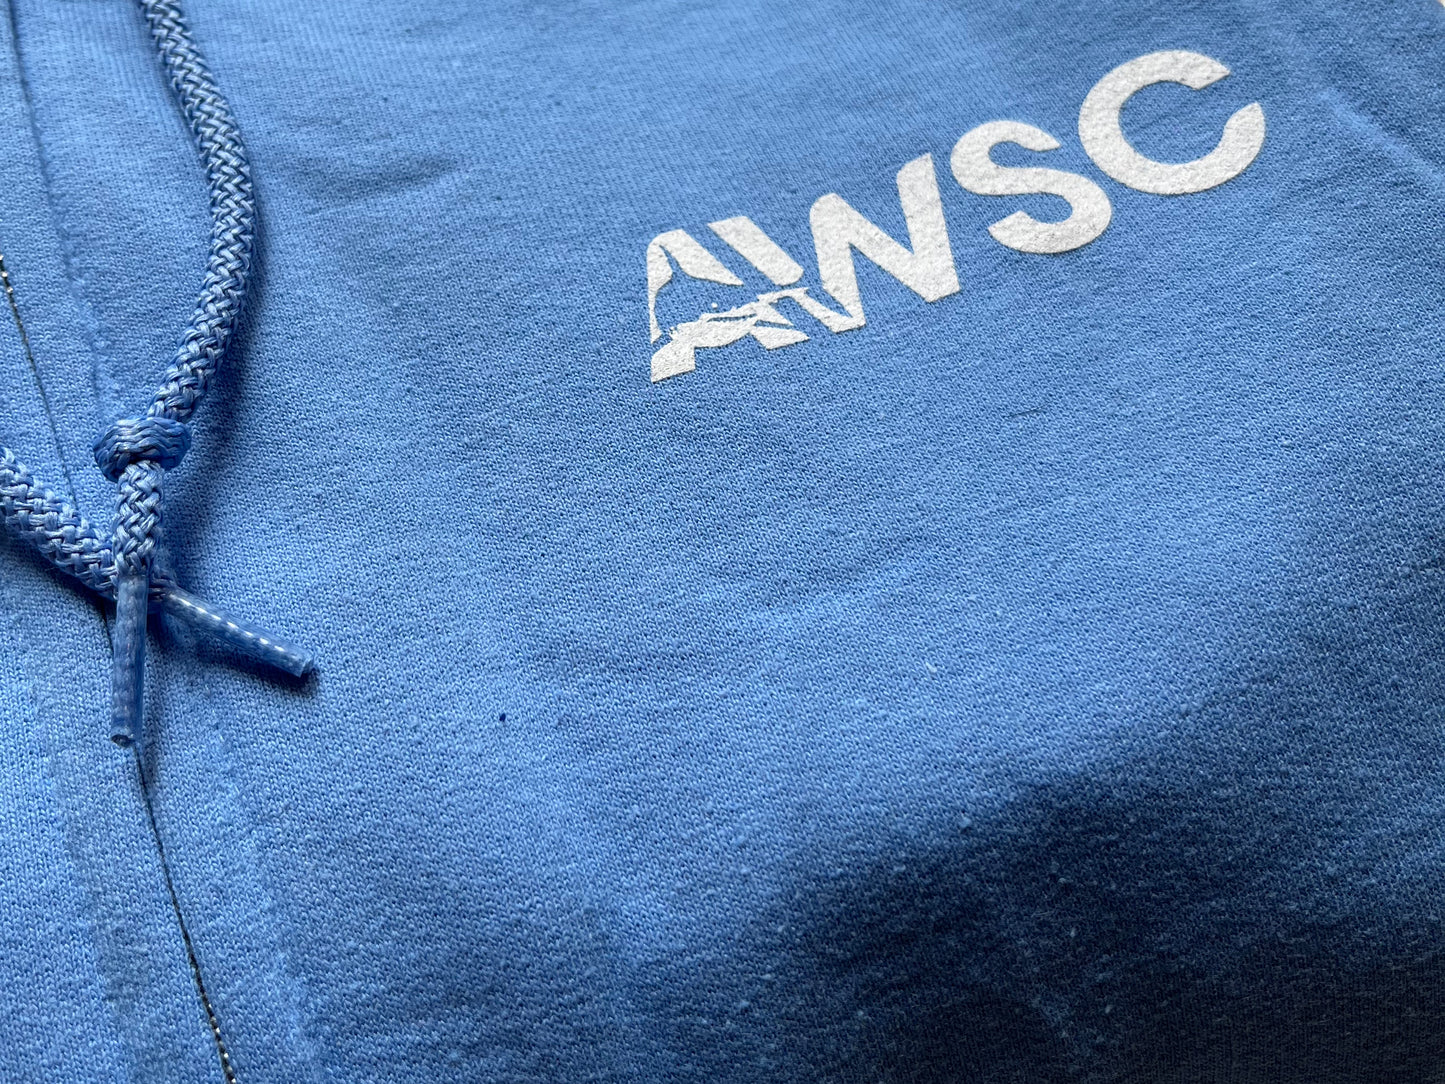 AWSC Adult unisex hooded sweatshirt